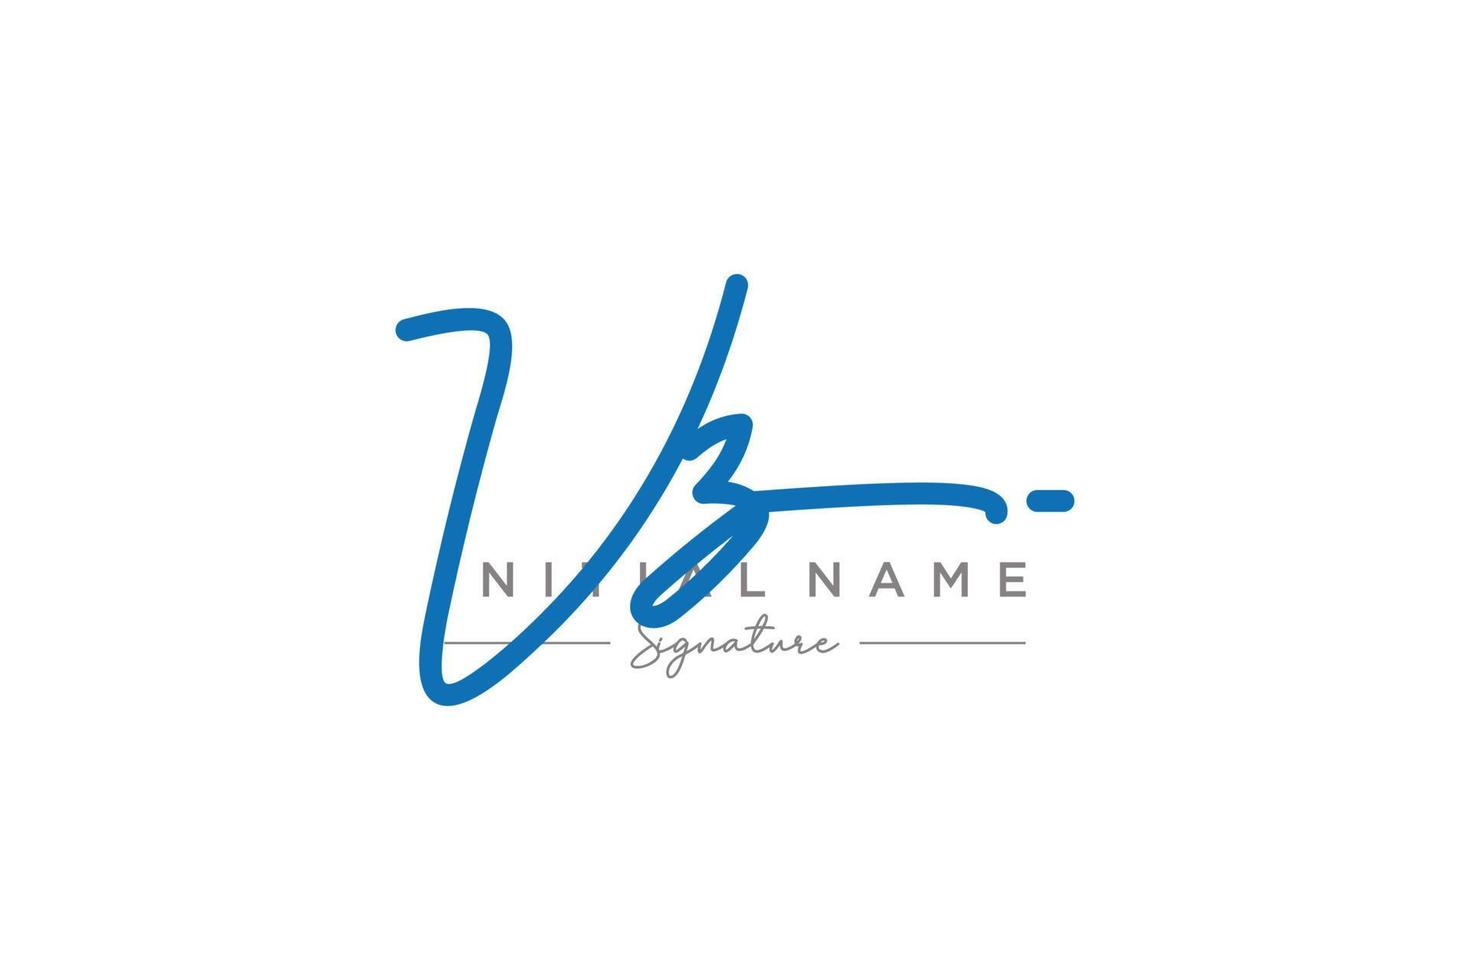 iniziale vz firma logo modello vettore. mano disegnato calligrafia lettering vettore illustrazione.